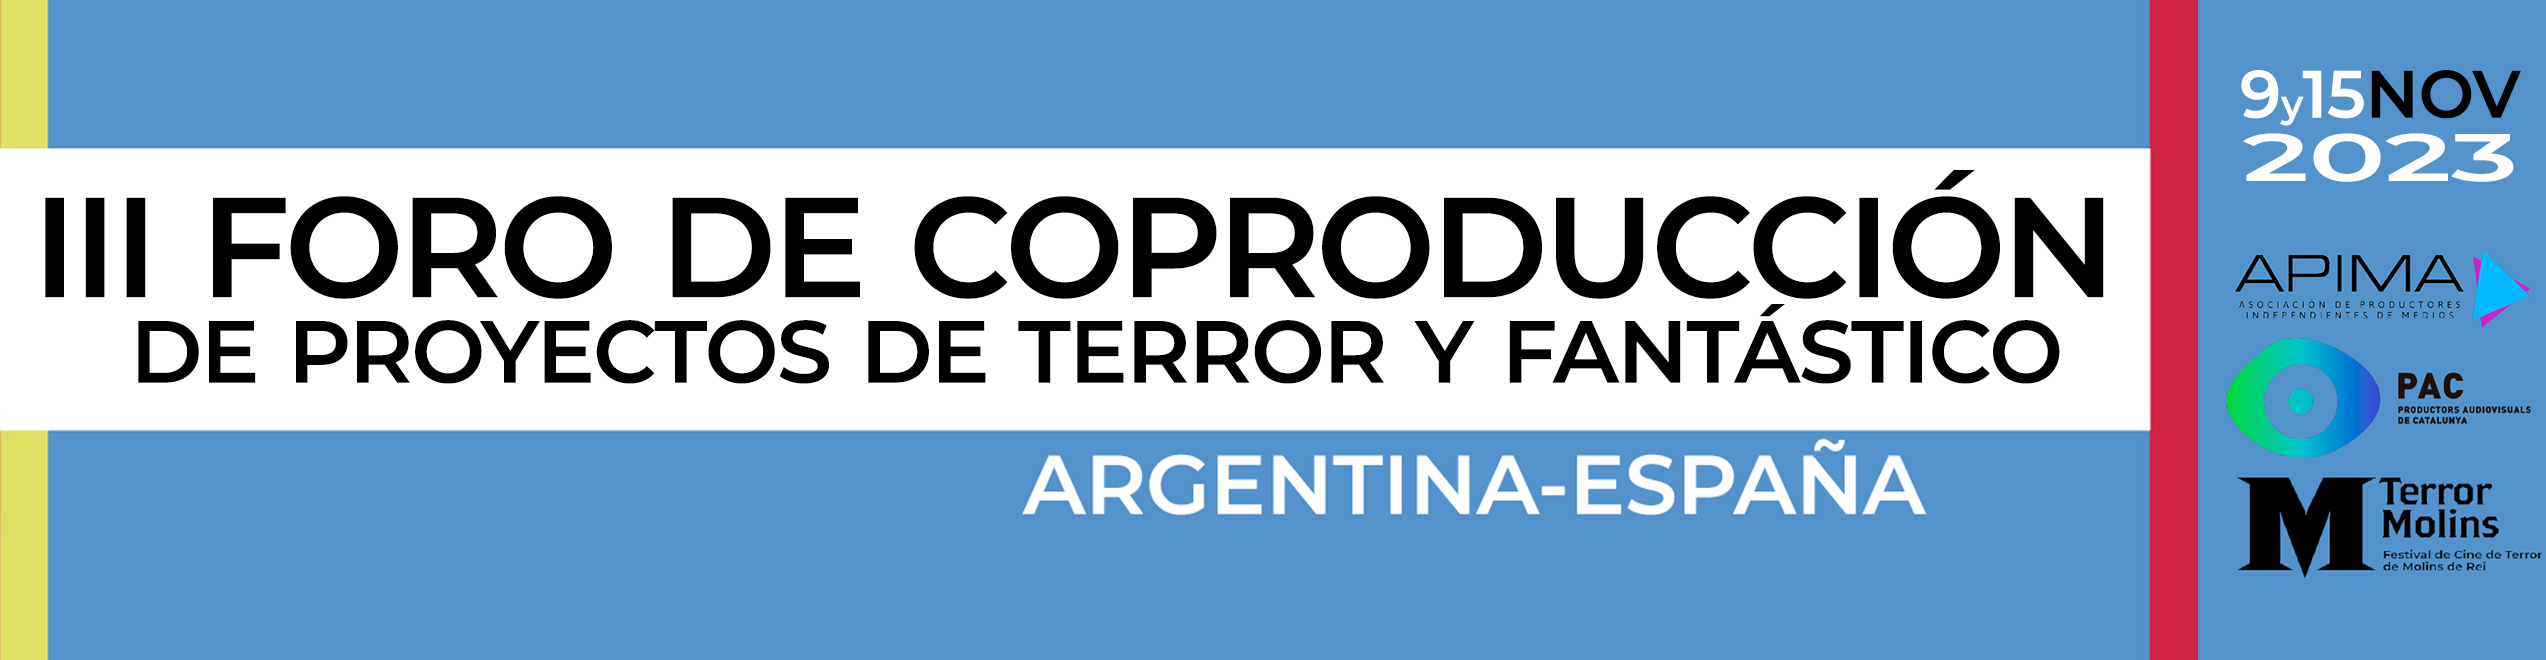 Foro de Coproducción Argentina-España de Proyectos de Terror y Fantástico